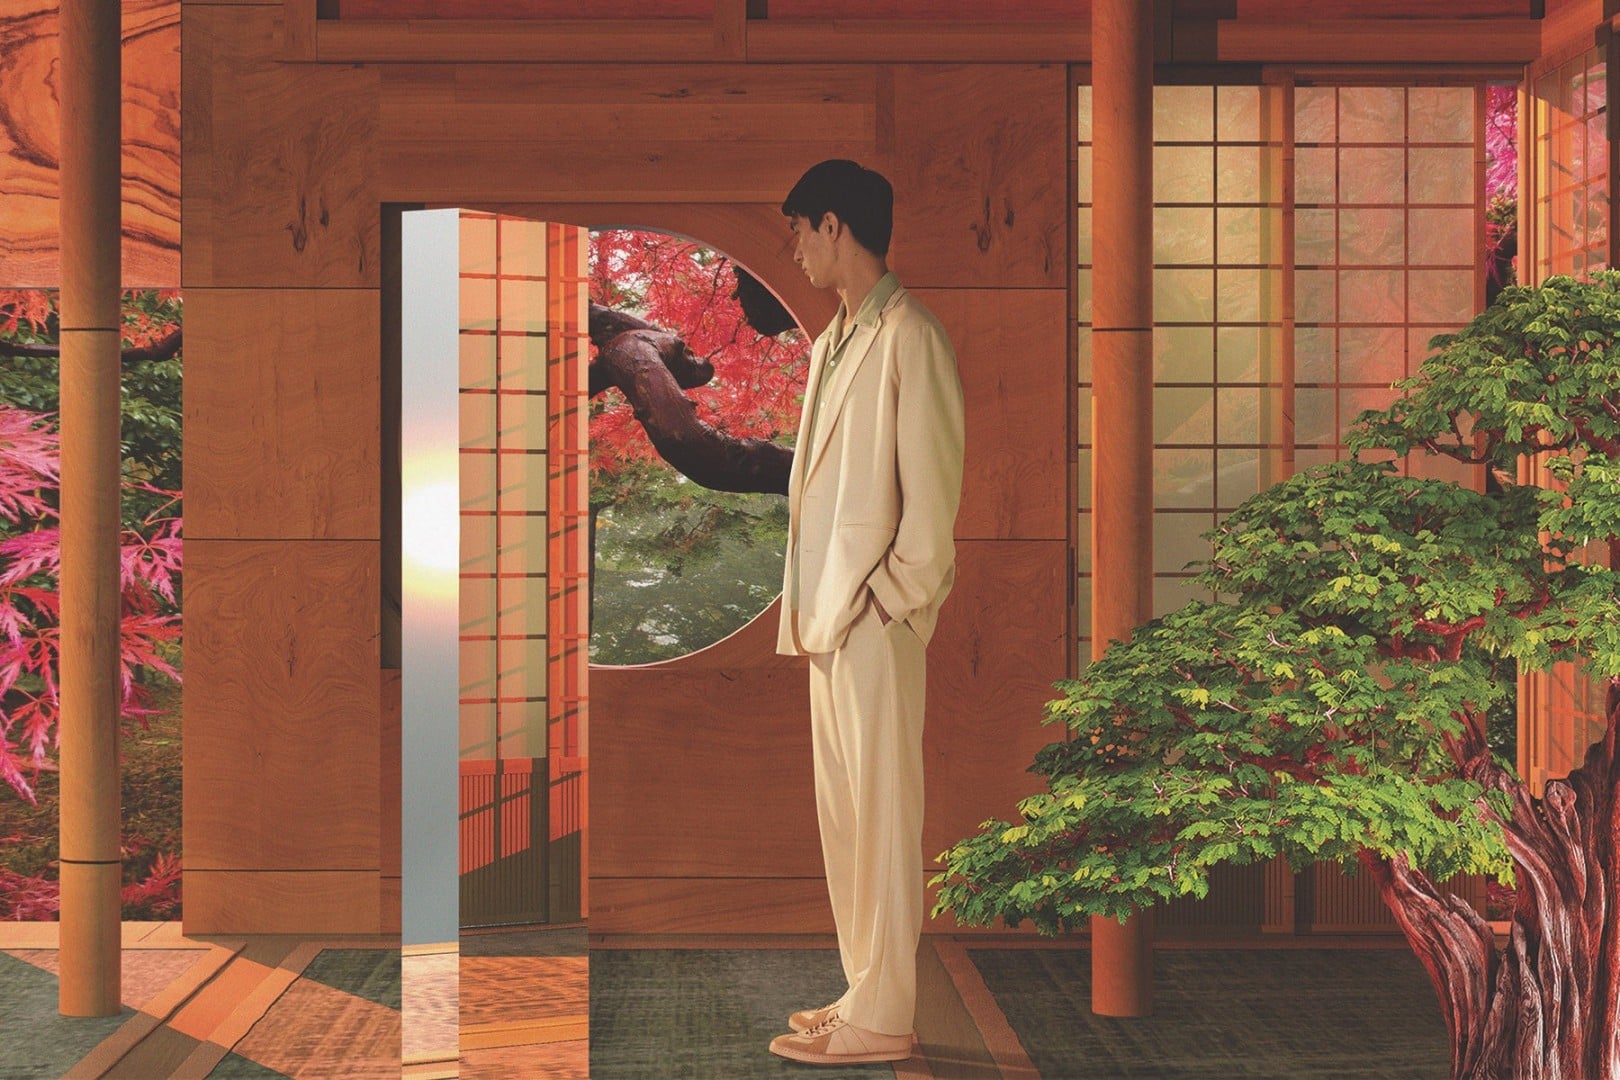 # MR PORTER「The Japan Edit」：聯手 15 個極具影響力日牌推出獨家合作系列 5